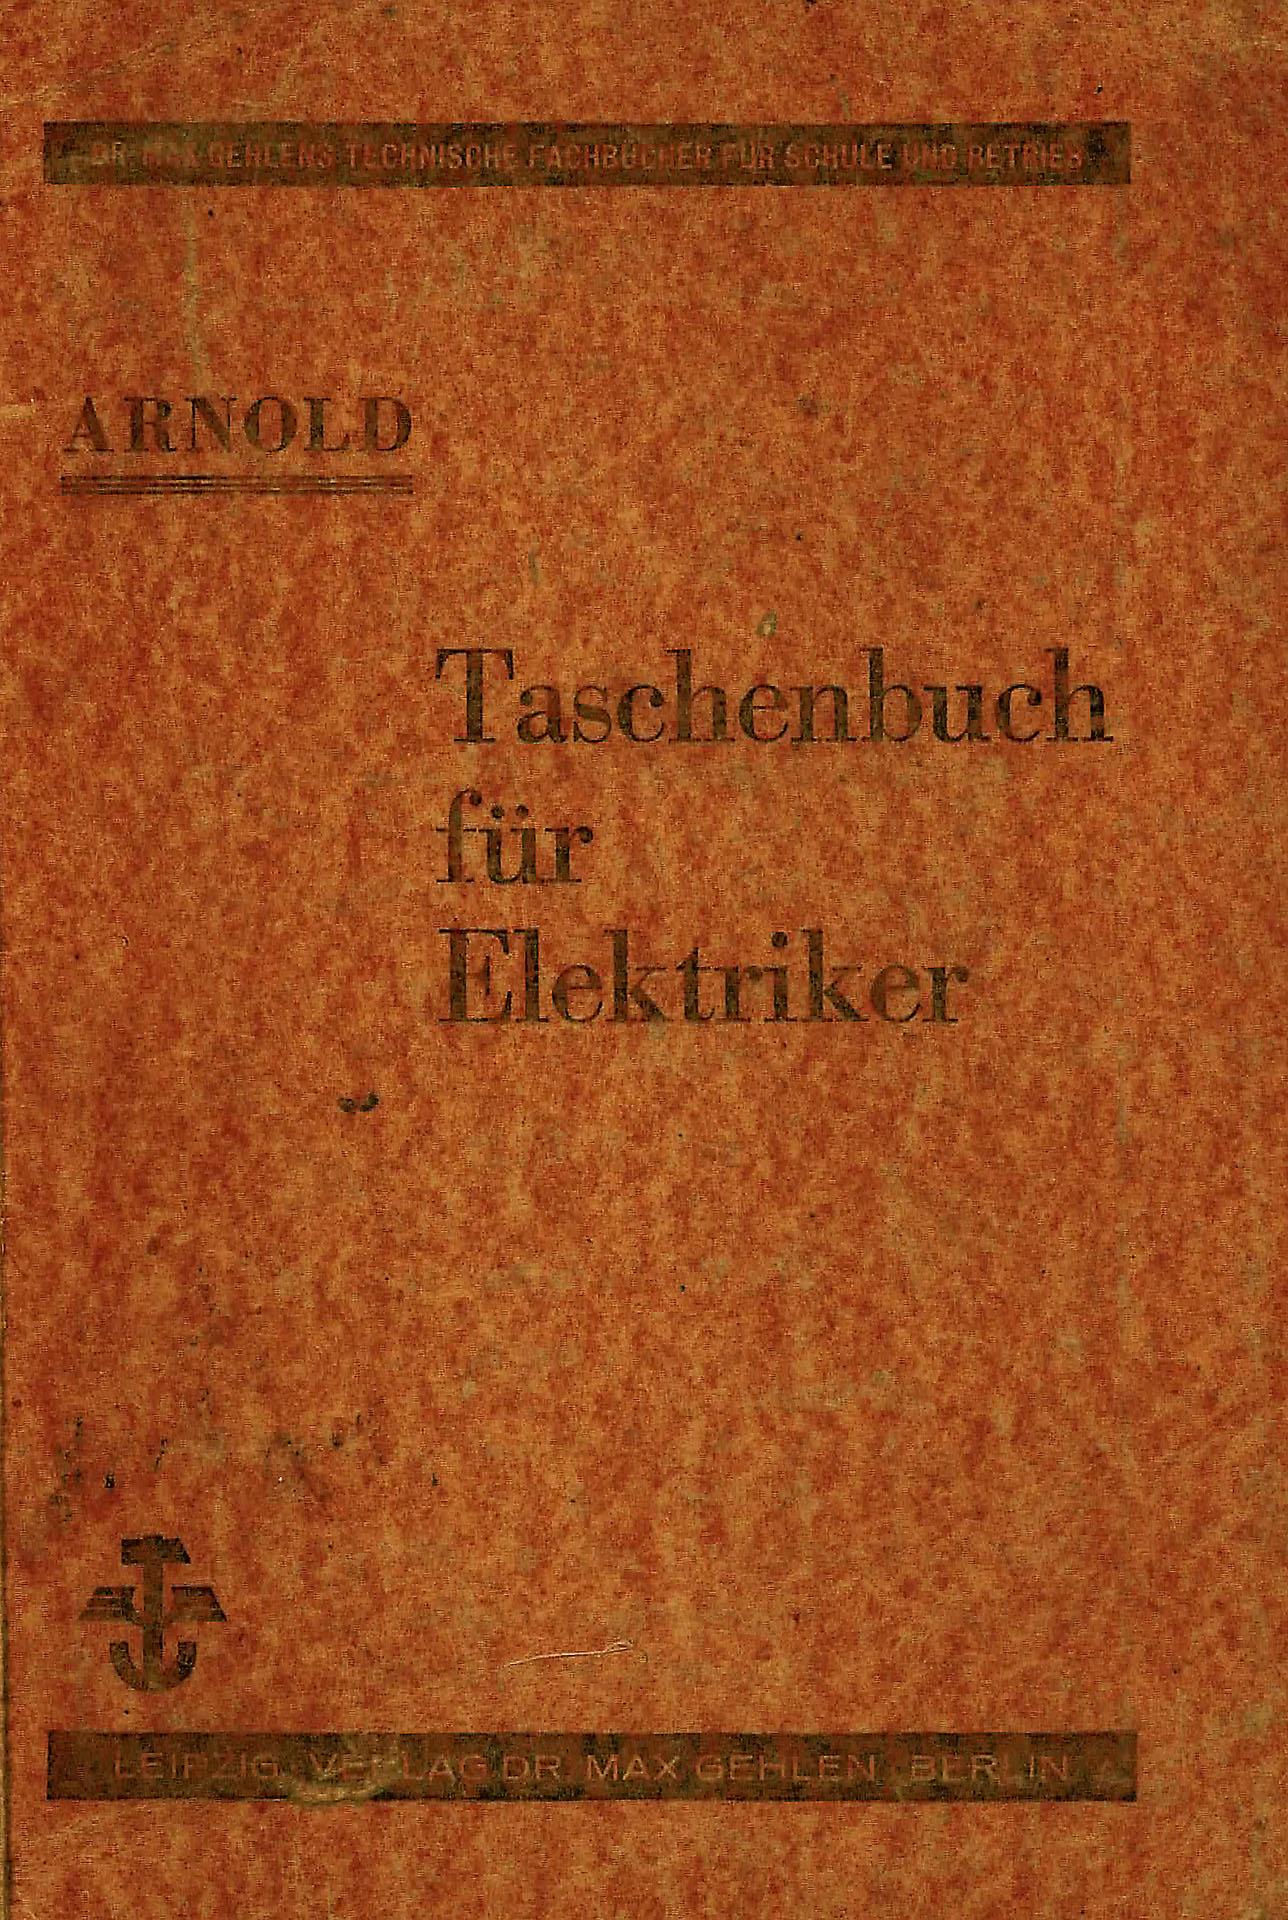 Taschenbuch für Elektriker - Arnold, R